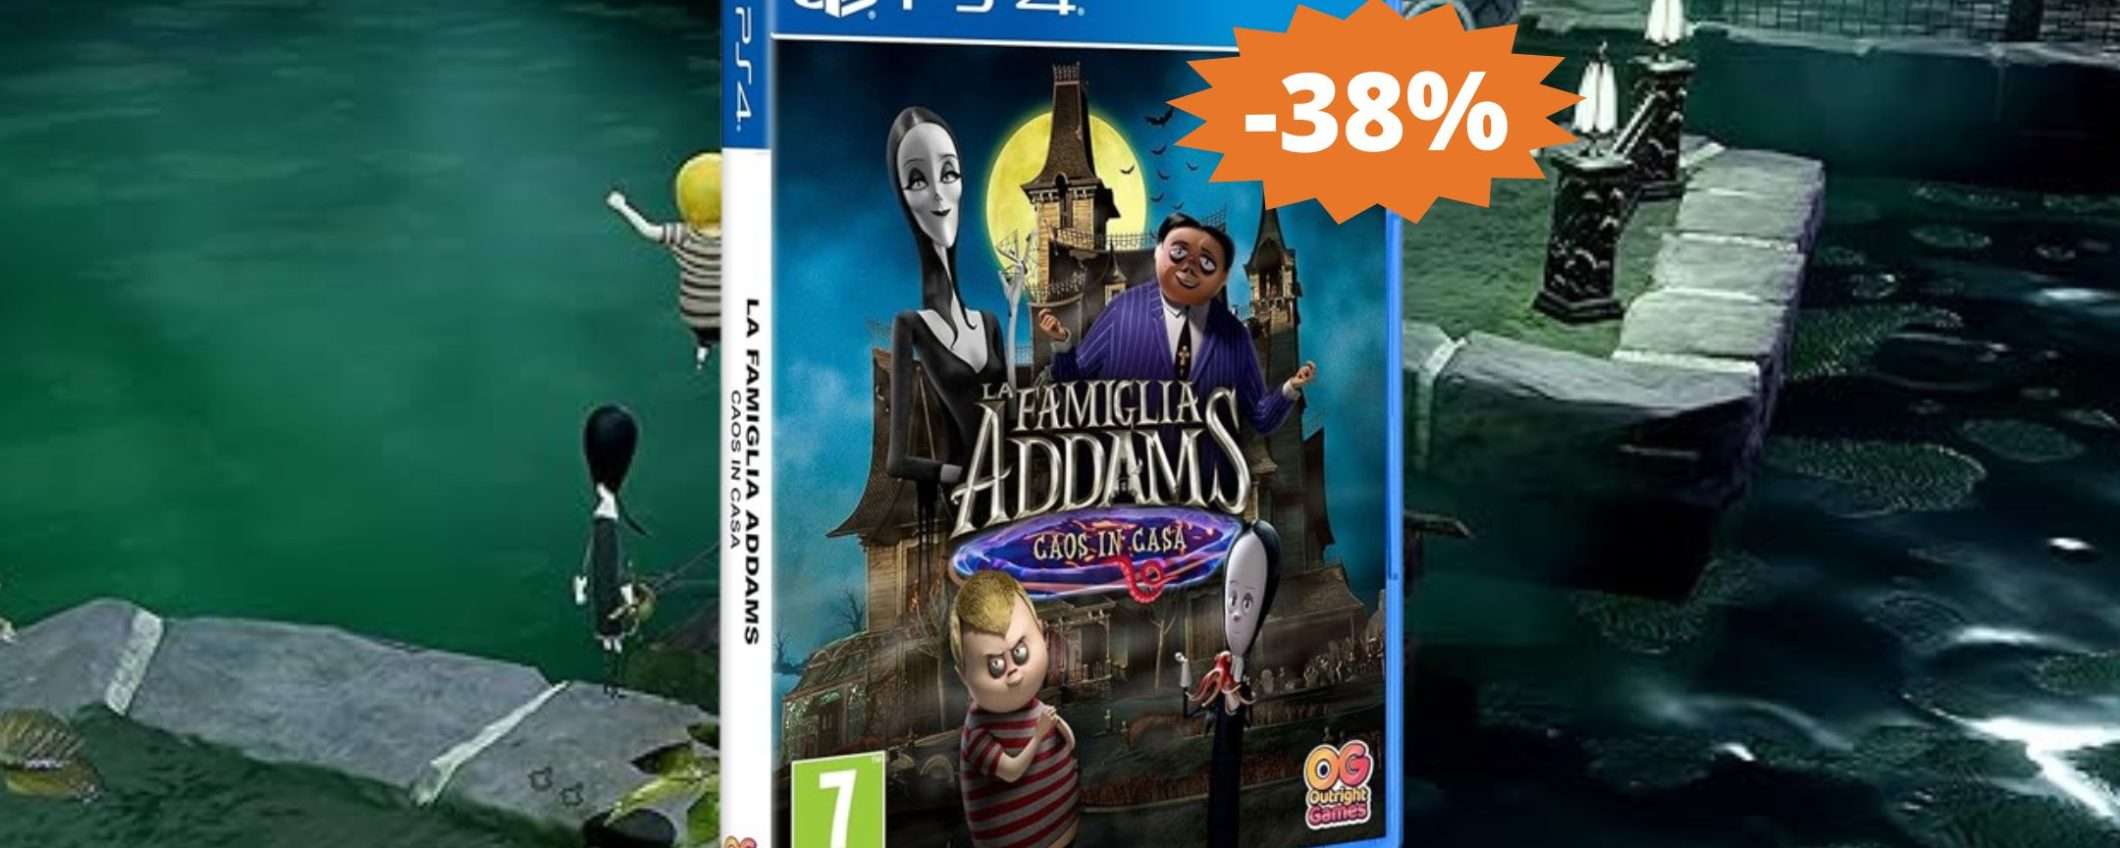 La Famiglia Addams per PS4: un'avventura spaventosamente DIVERTENTE